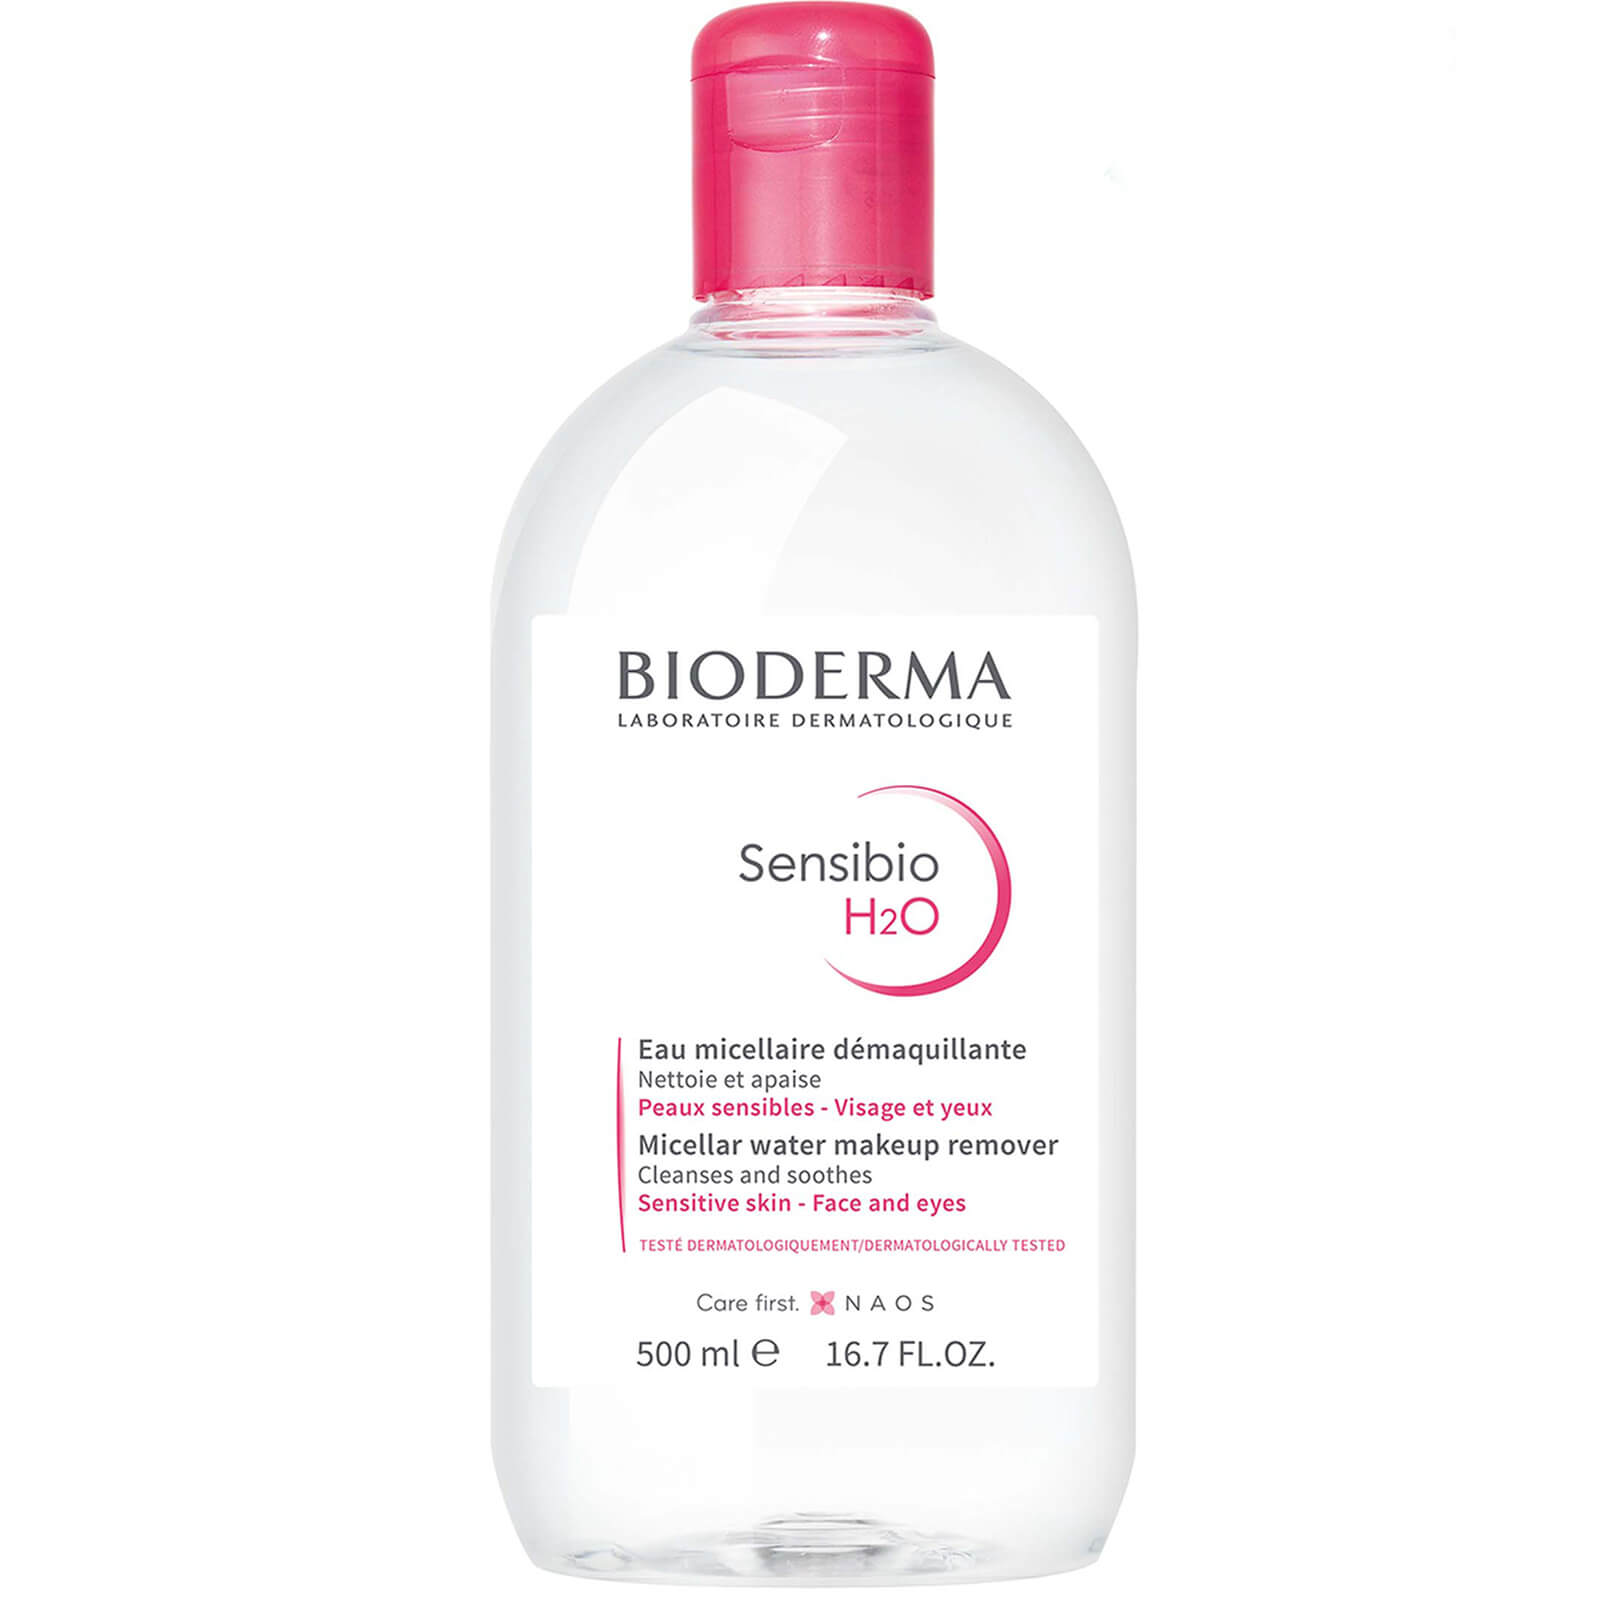 Image of Bioderma Sensibio H2O Acqua micellare detergente e struccante Pelle sensibile.